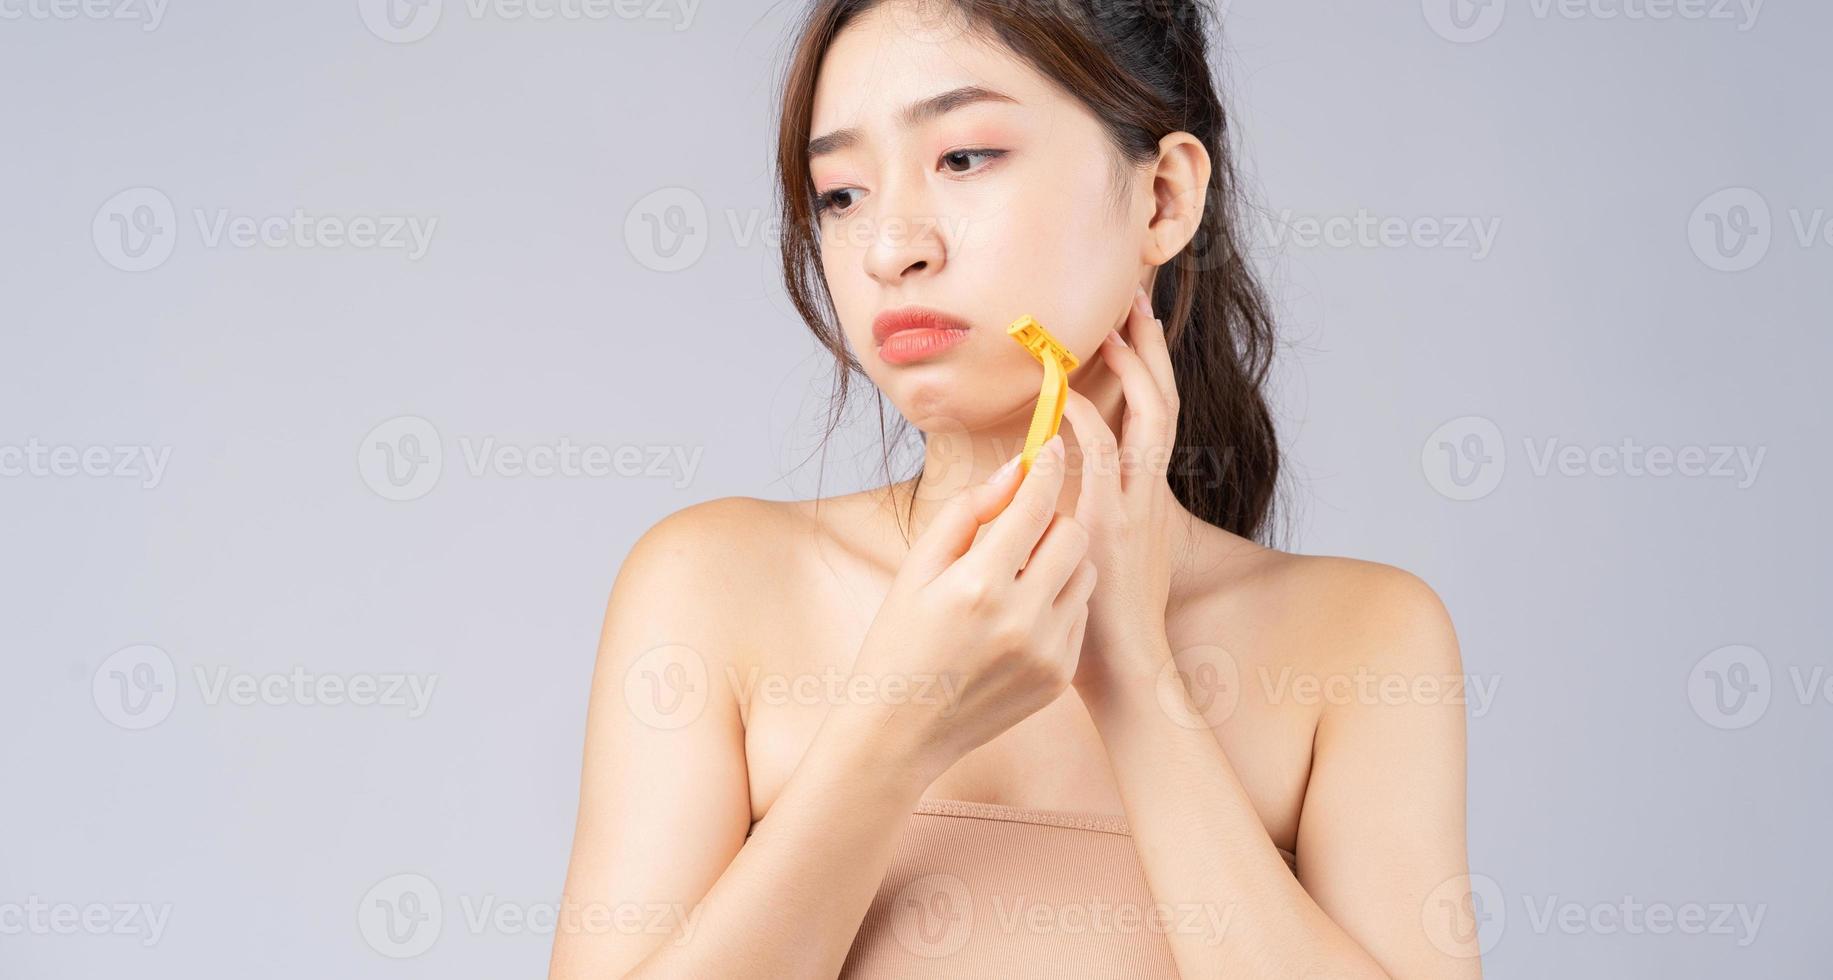 jeune fille asiatique inquiète pour les poils du visage photo